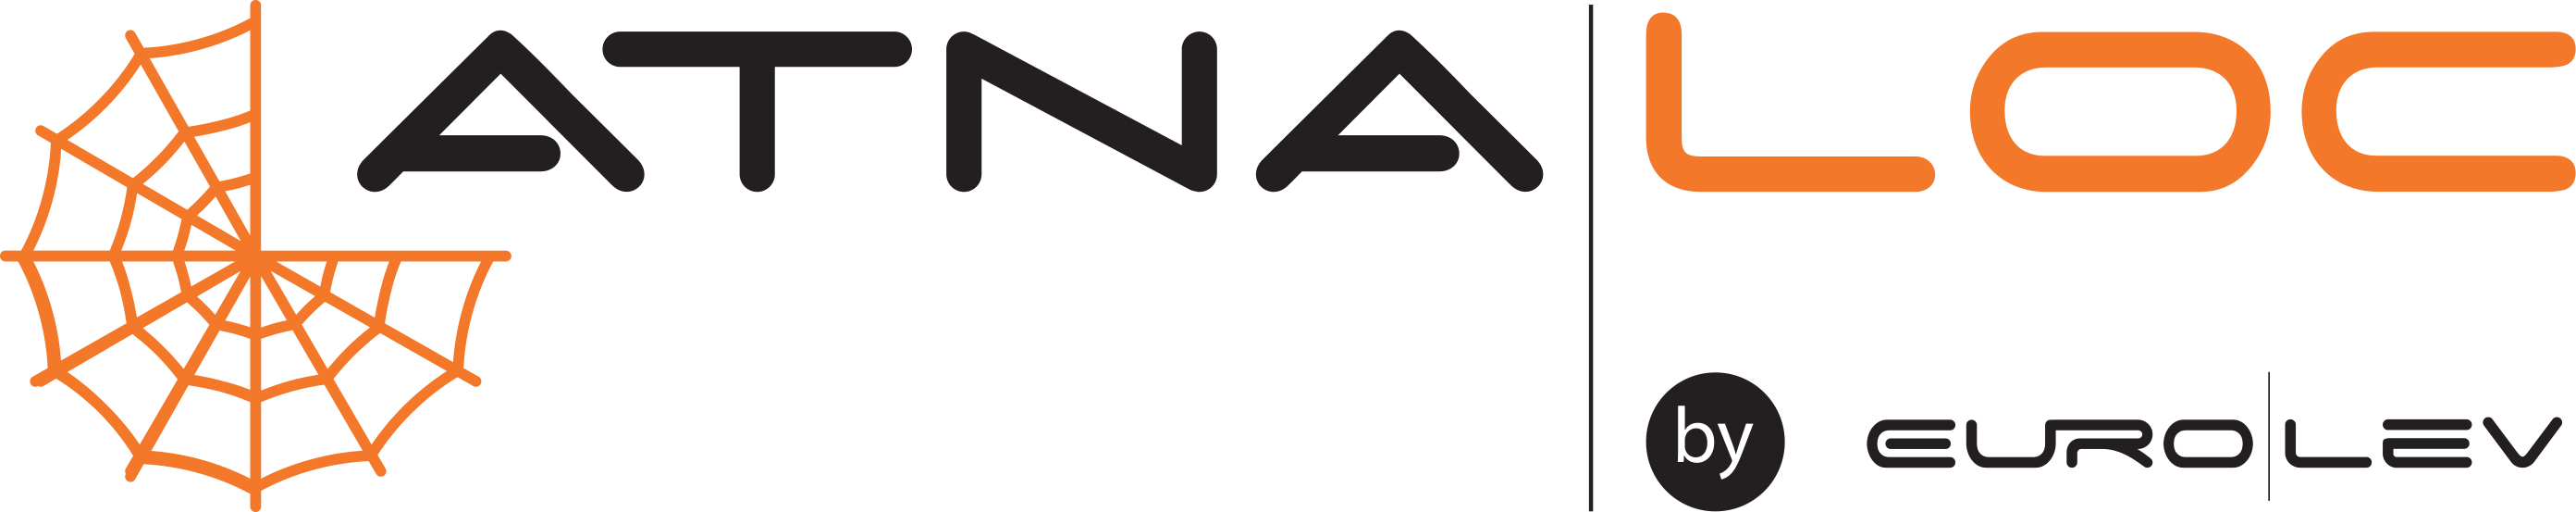 Logo ATNA by Eurolev